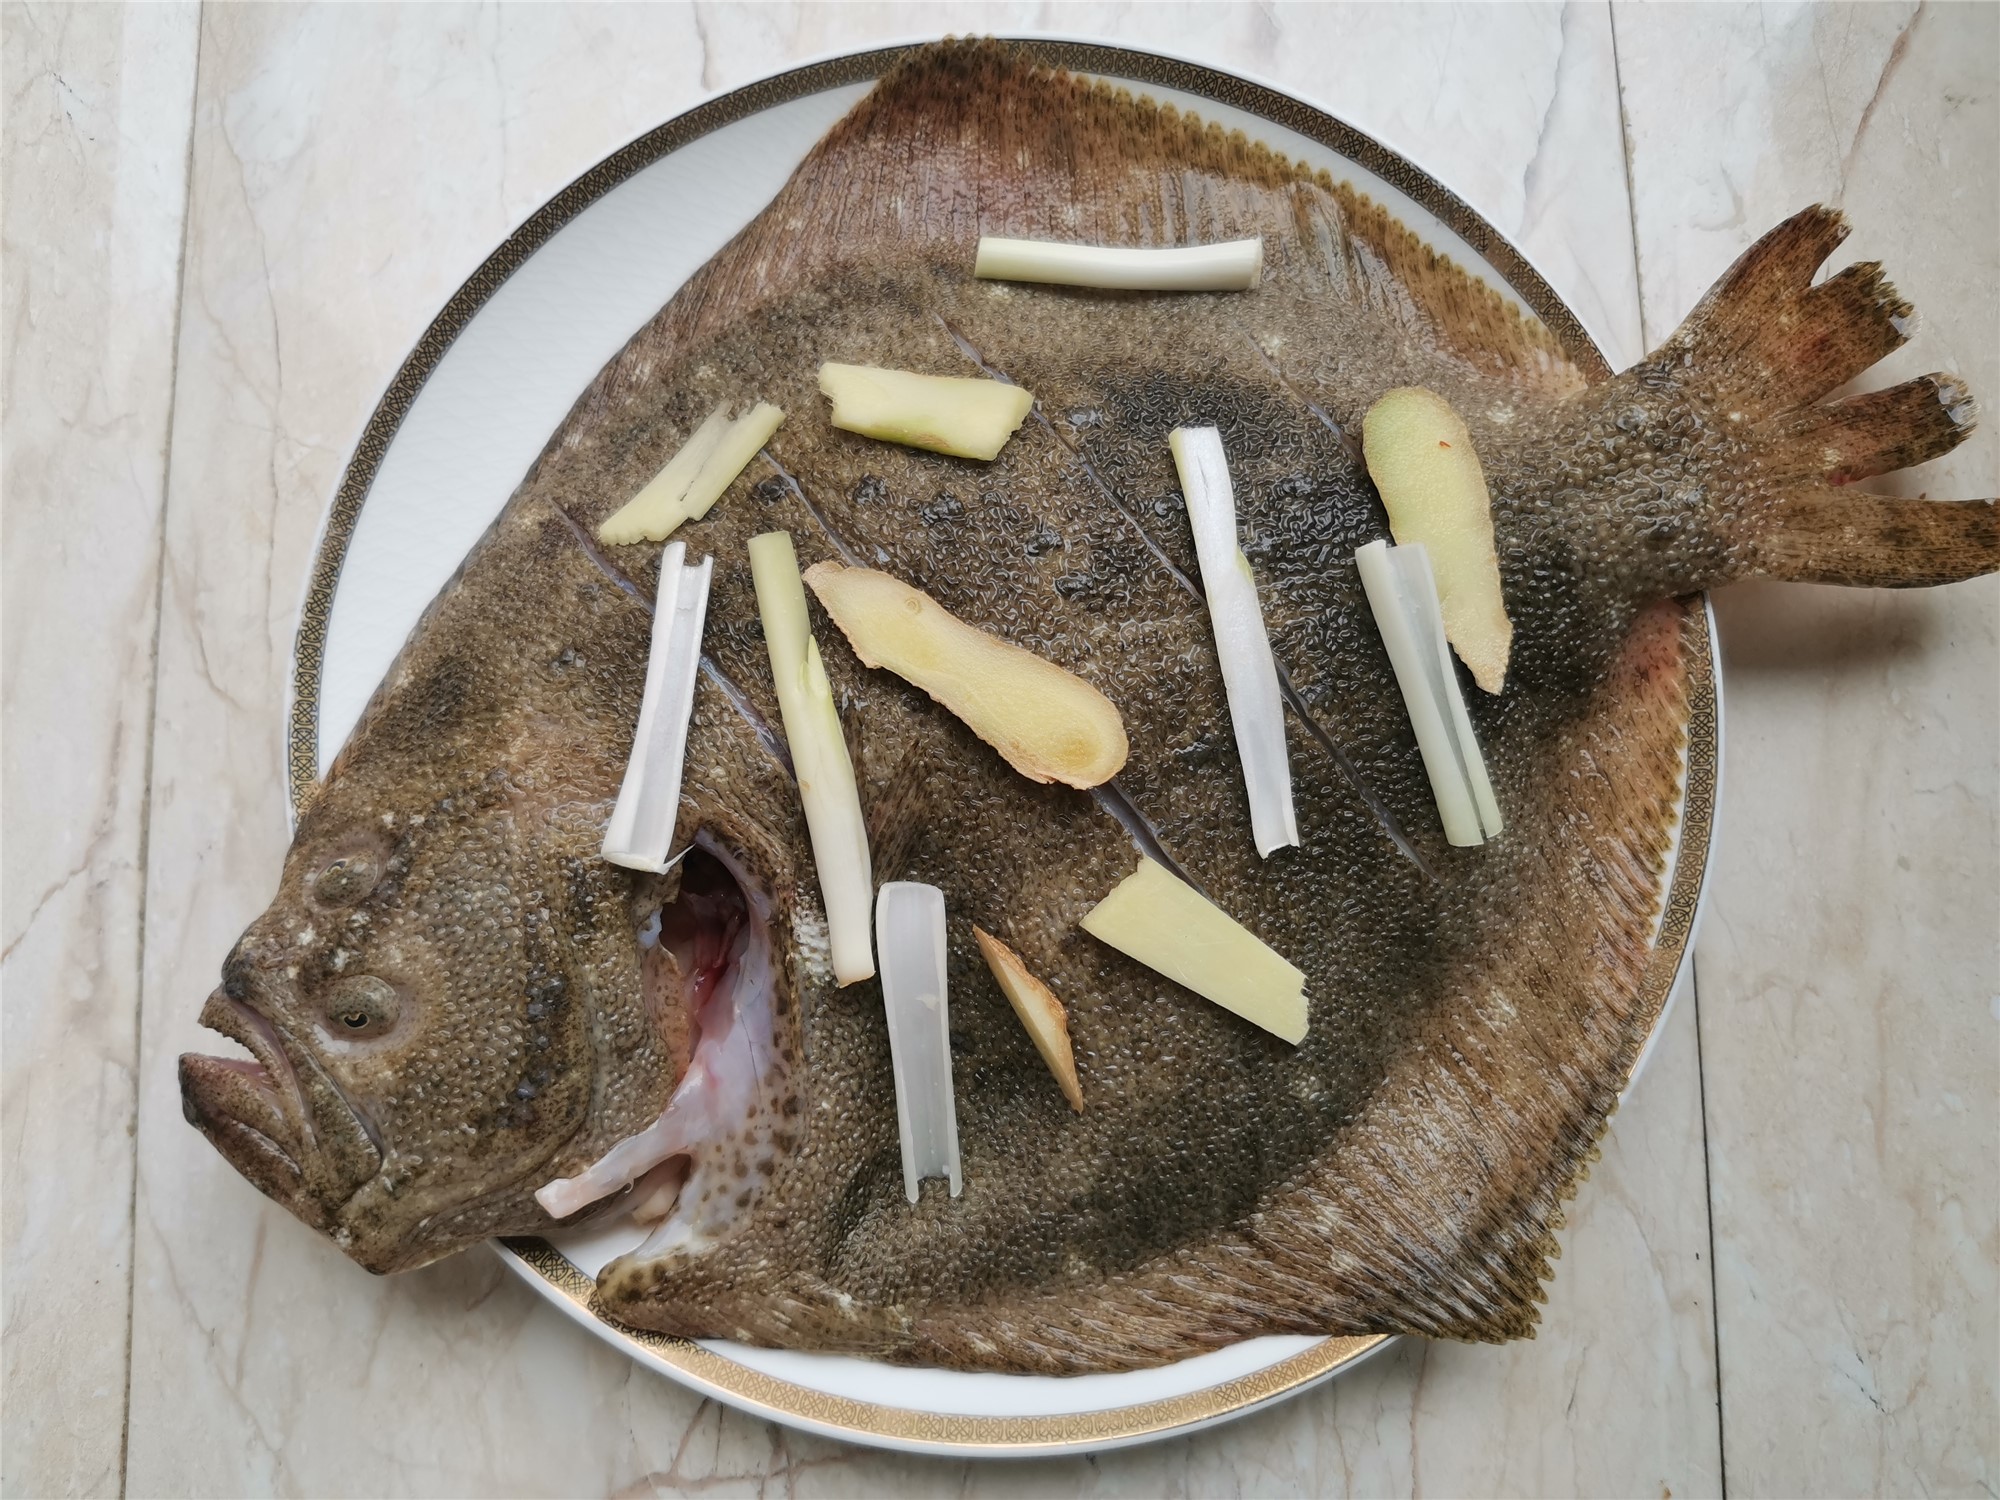 老人和小孩特别适合吃这个鱼,骨软没有小刺,用清蒸的做法更鲜美